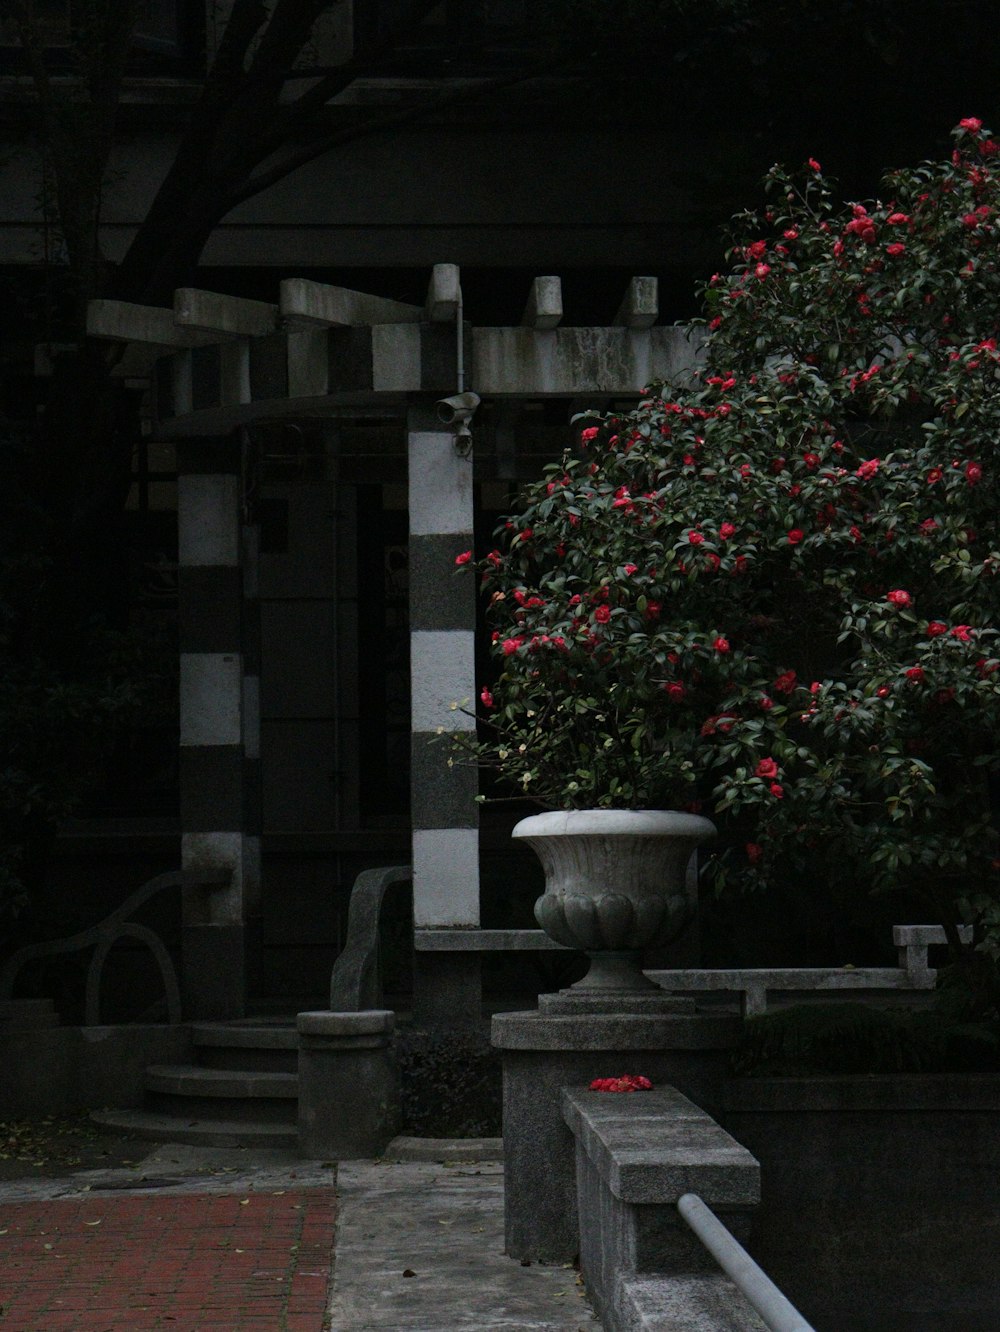 Un jarrón con flores rojas sentado en un banco de piedra